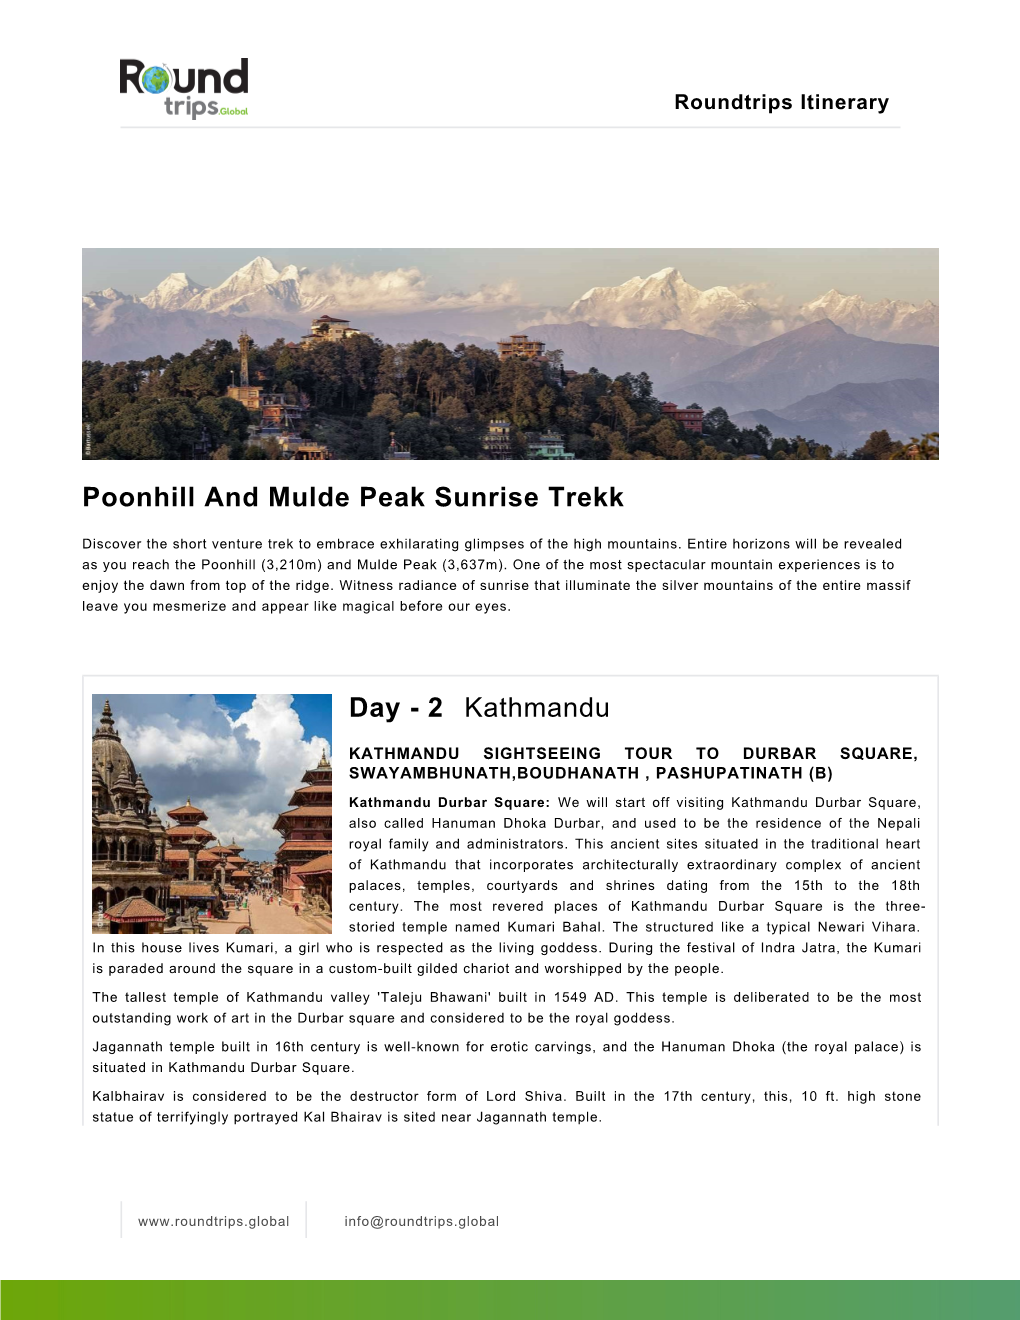 Poonhill and Mulde Peak Sunrise Trekk